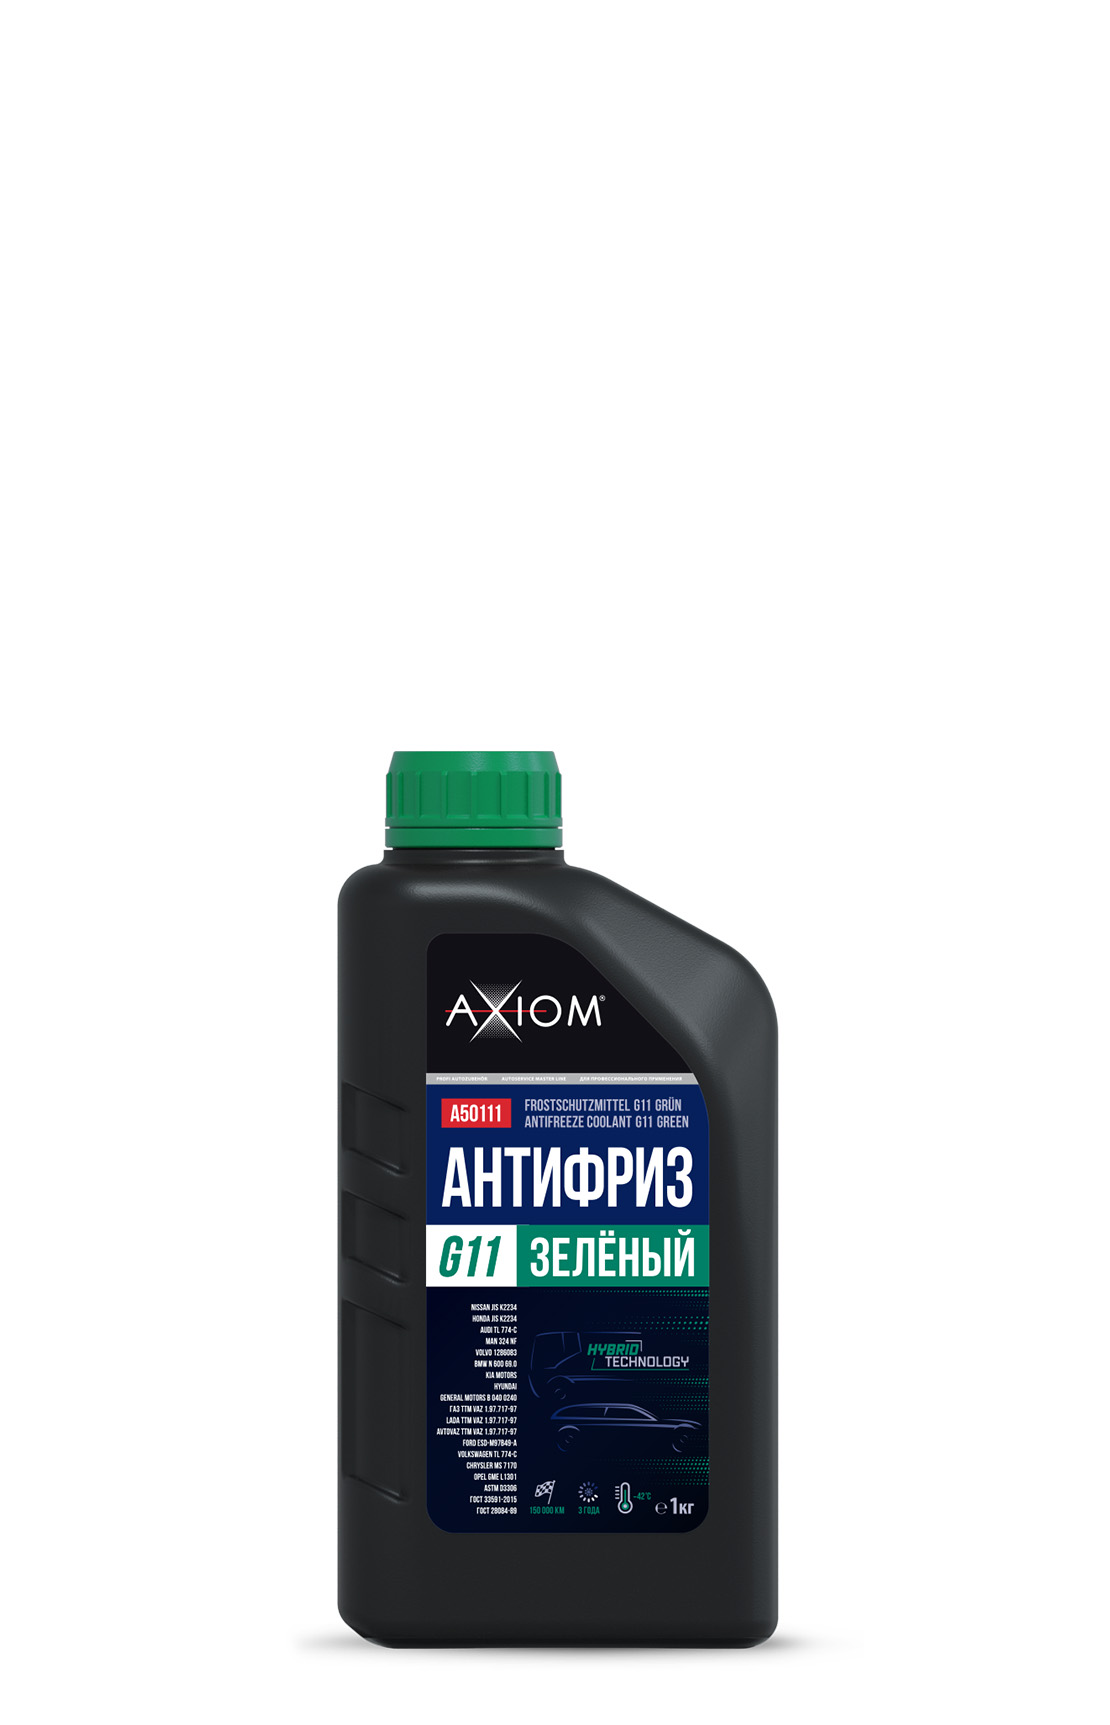 Axiom  A50511 Антифриз G11 зеленый 1л